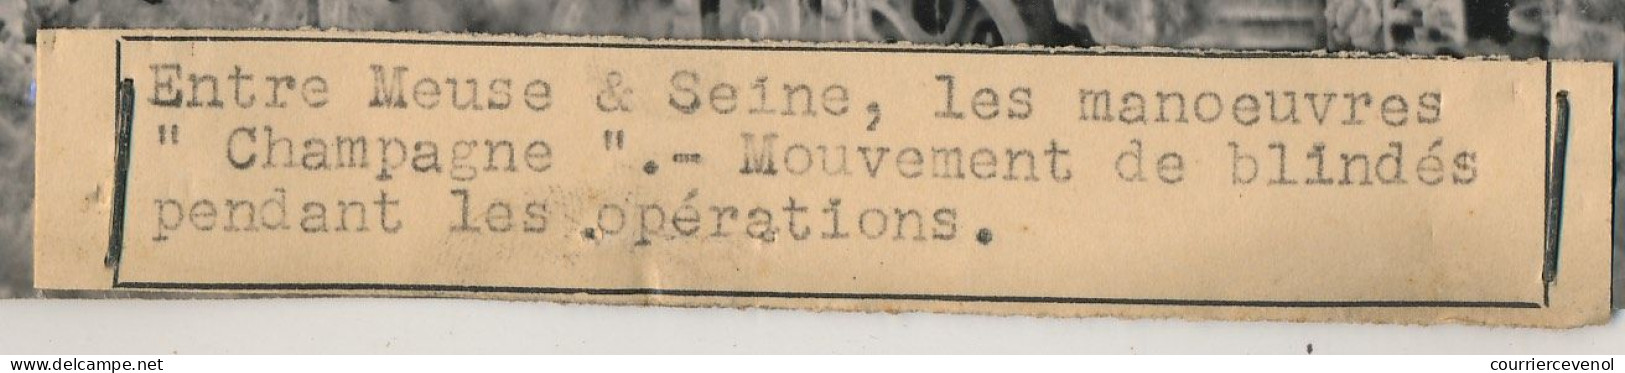 FRANCE - Photo De Presse Keystone - Entre Meuse Et Seine, Les Manoeuvres "Champagne" - Mouvement De Blindés... - Krieg, Militär